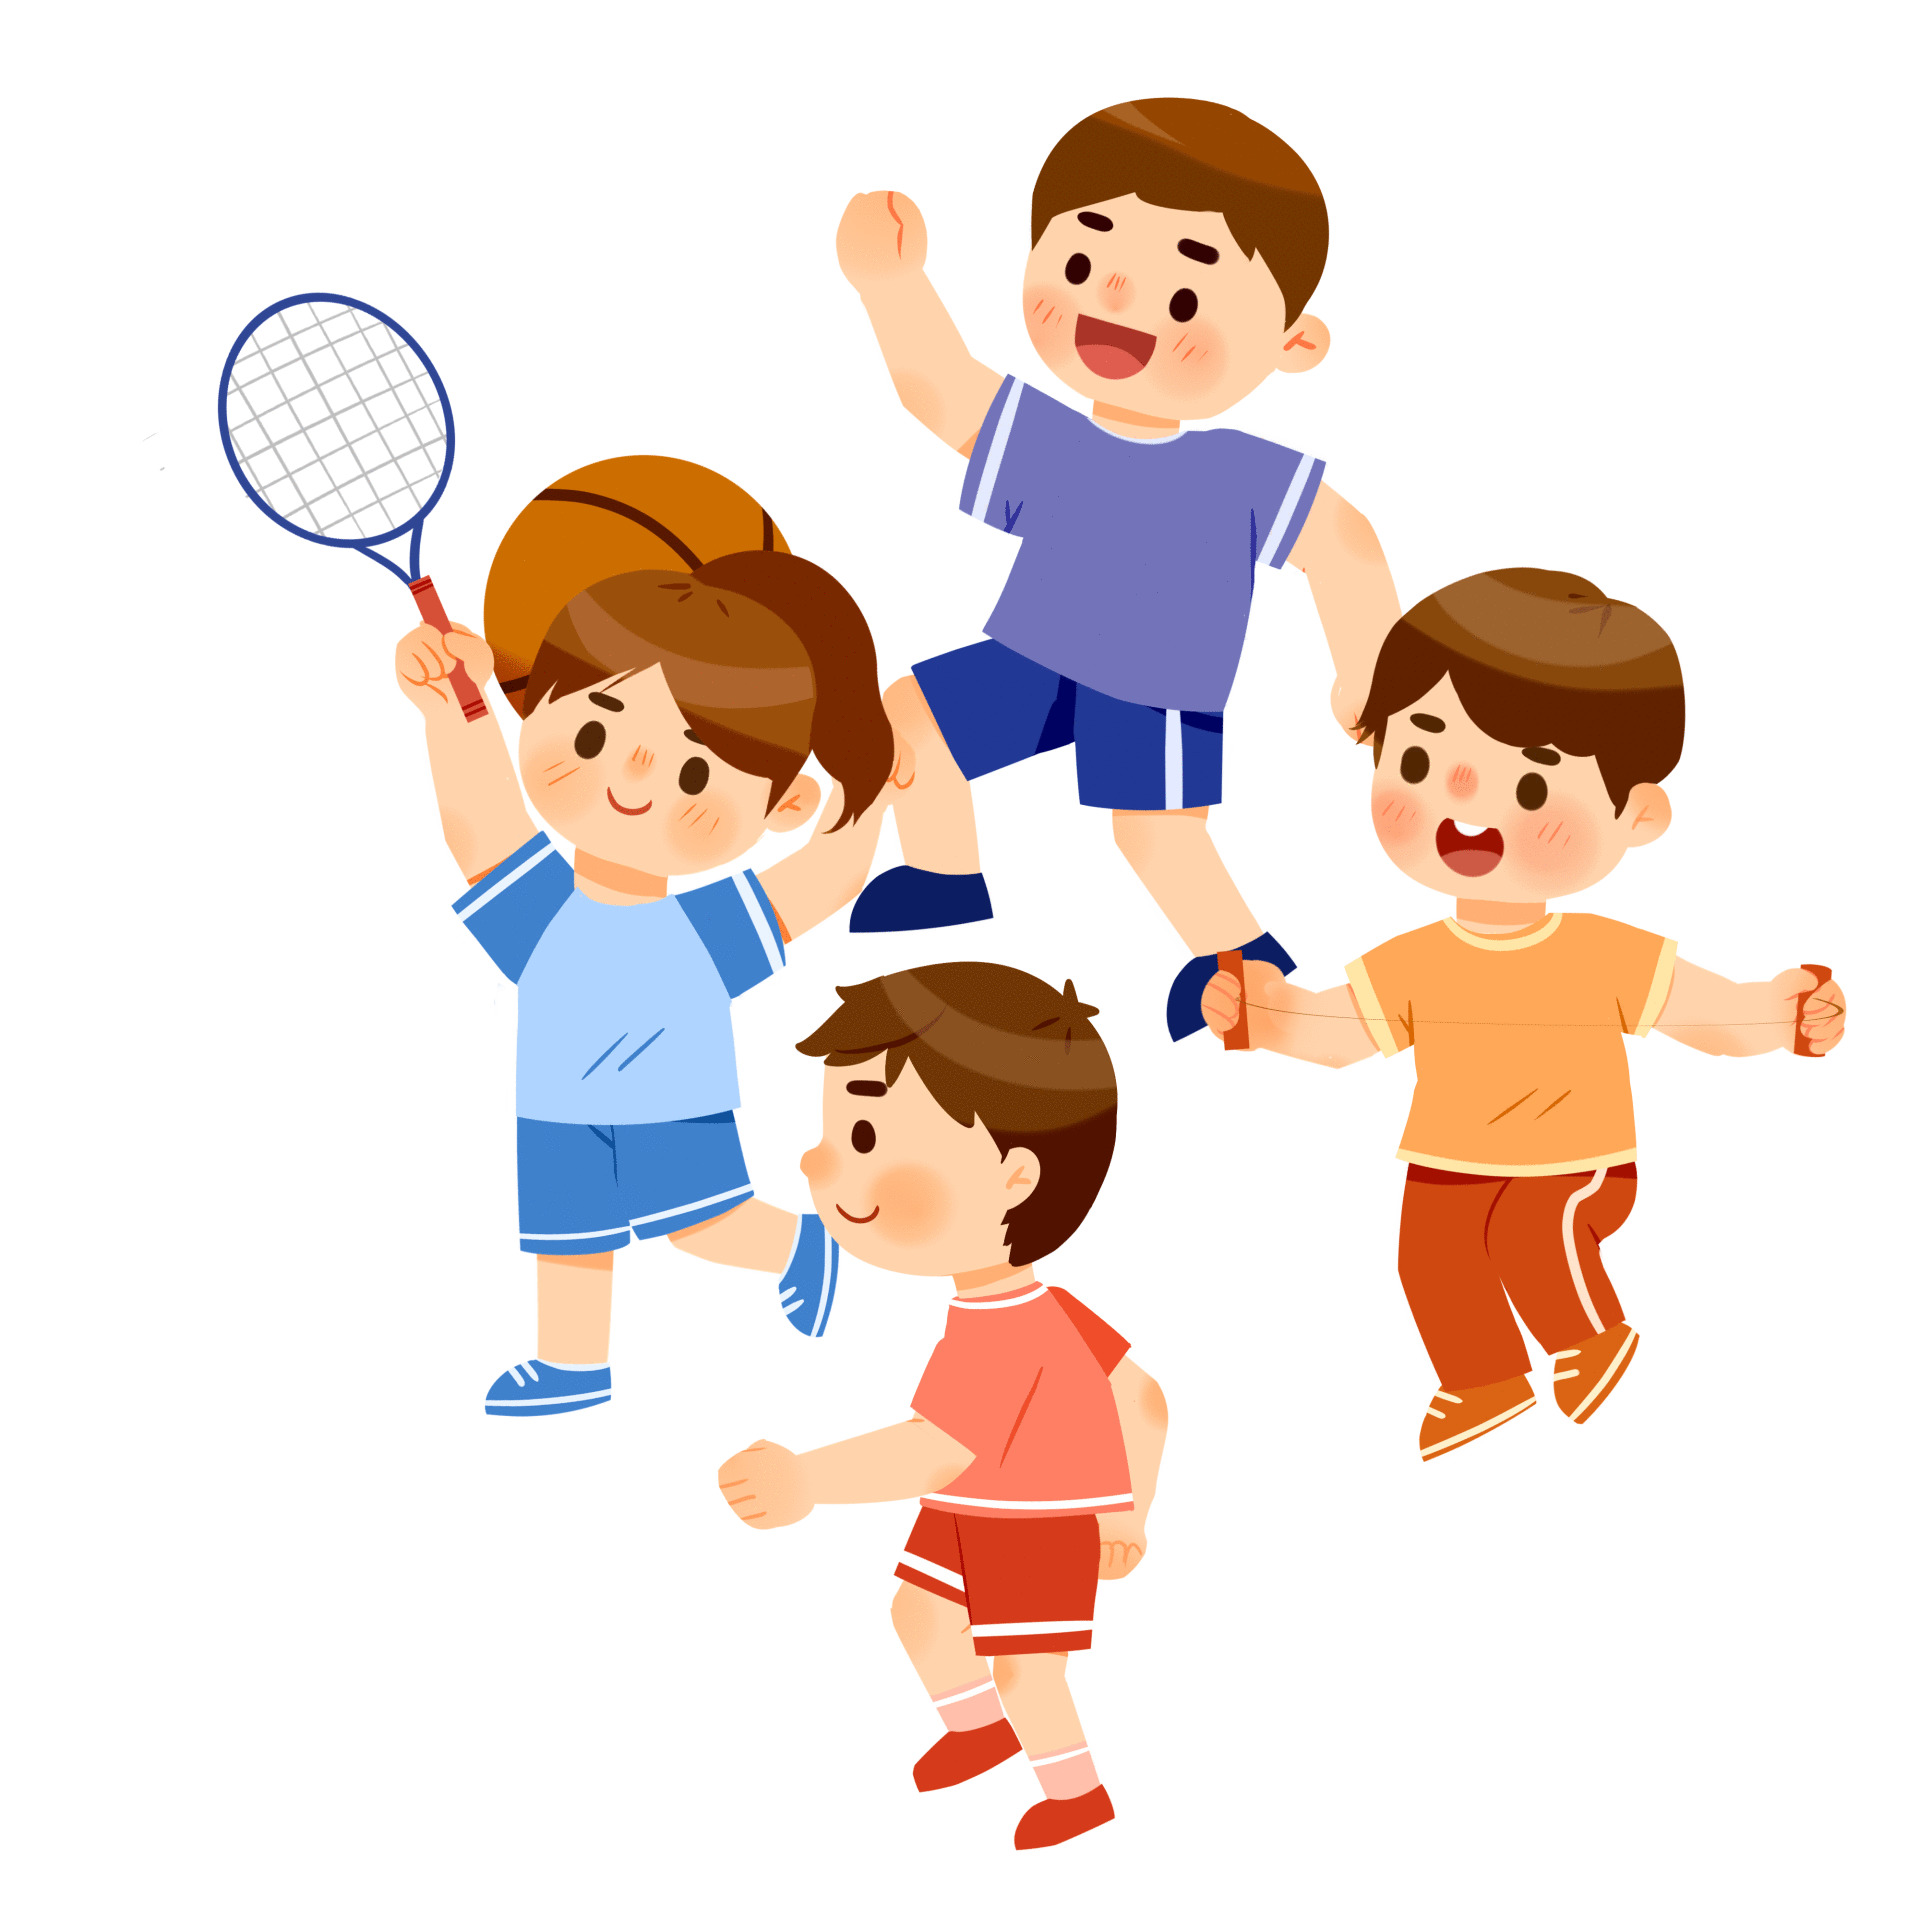 卡通人物运动体育篮球跑步跳绳羽毛球元素GIF动态图运动元素